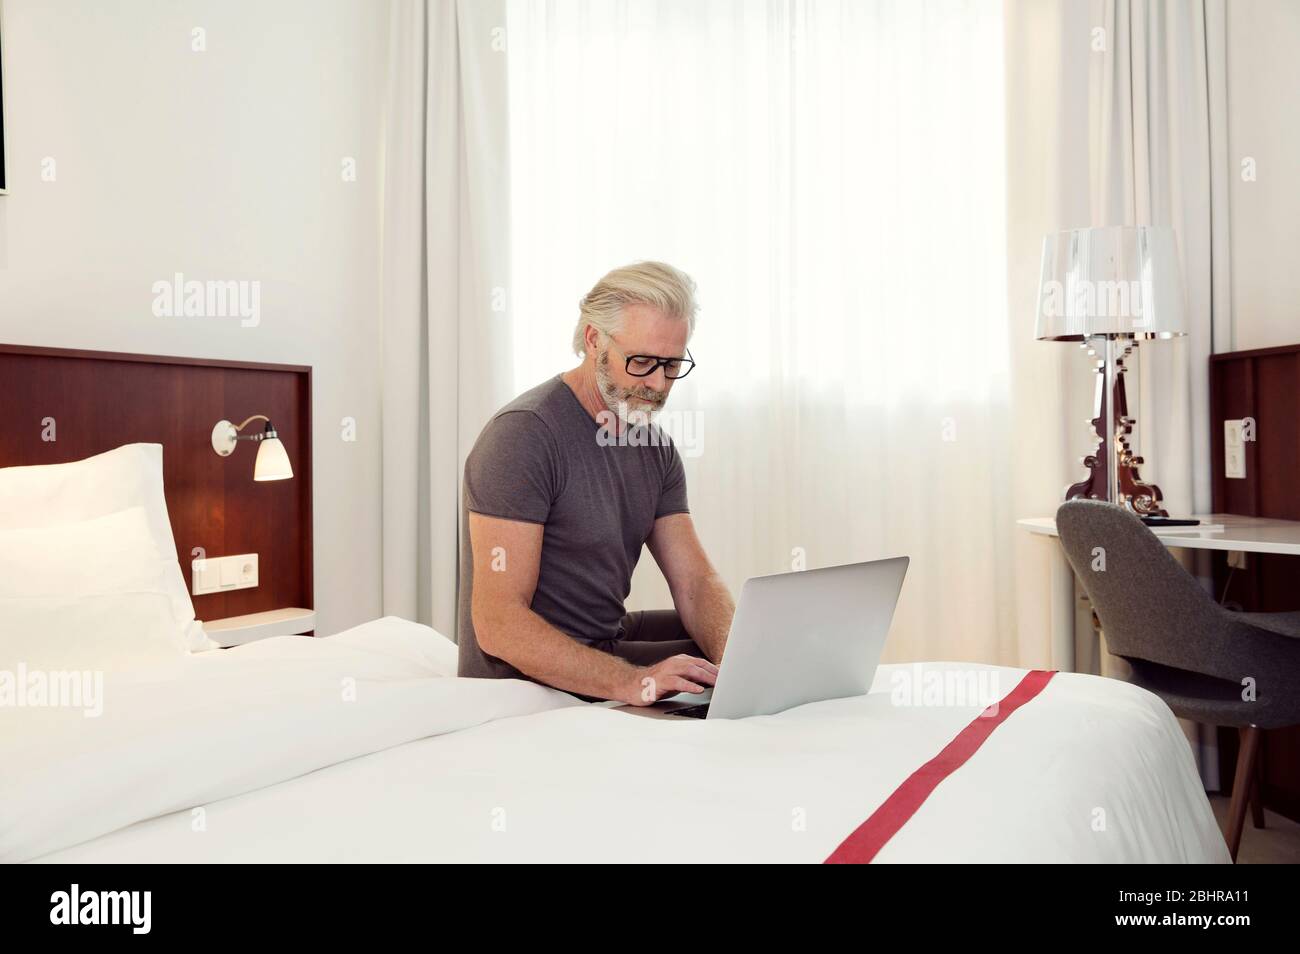 Un homme assis sur un lit qui travaille sur un ordinateur portable. Banque D'Images